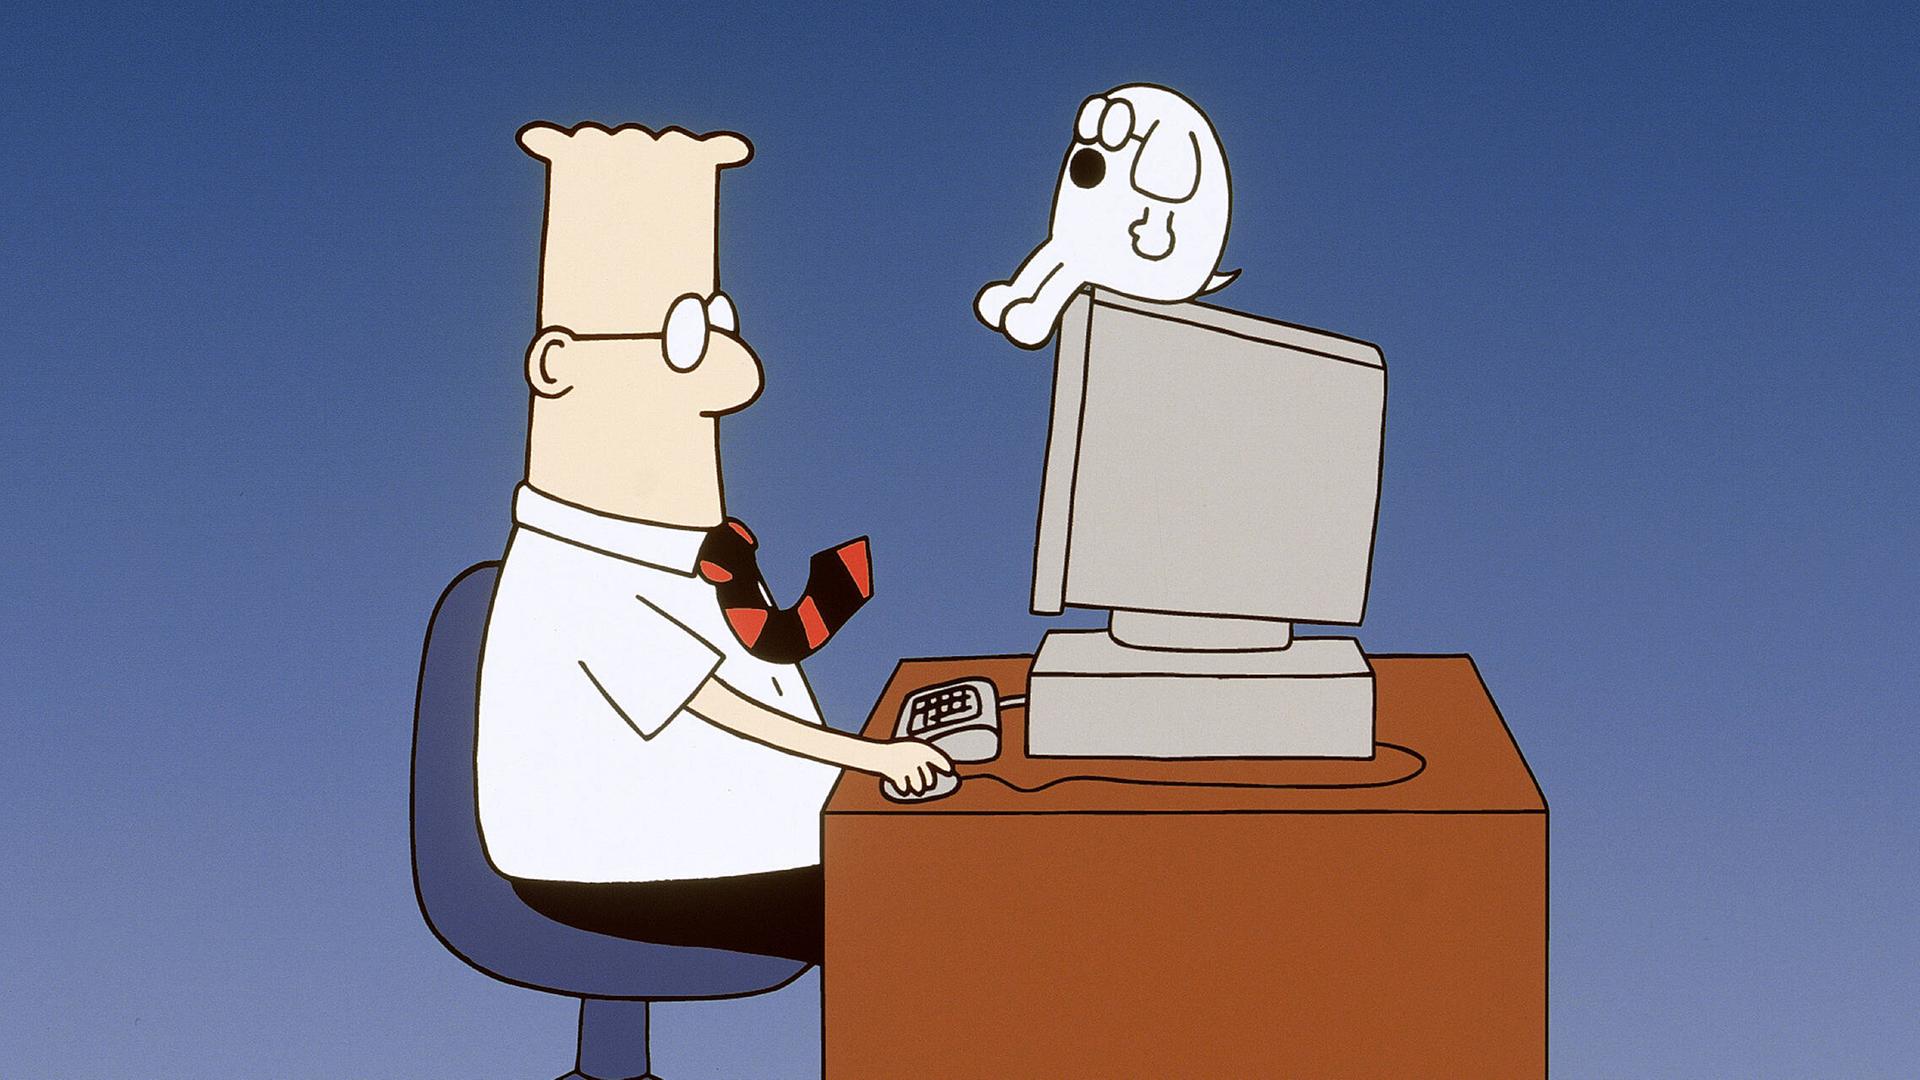 Die Comicfigur Dilbert sitzt an einem Schreibtisch vor einem PC, auf dem sein kleiner Hund Dogbert sitzt.